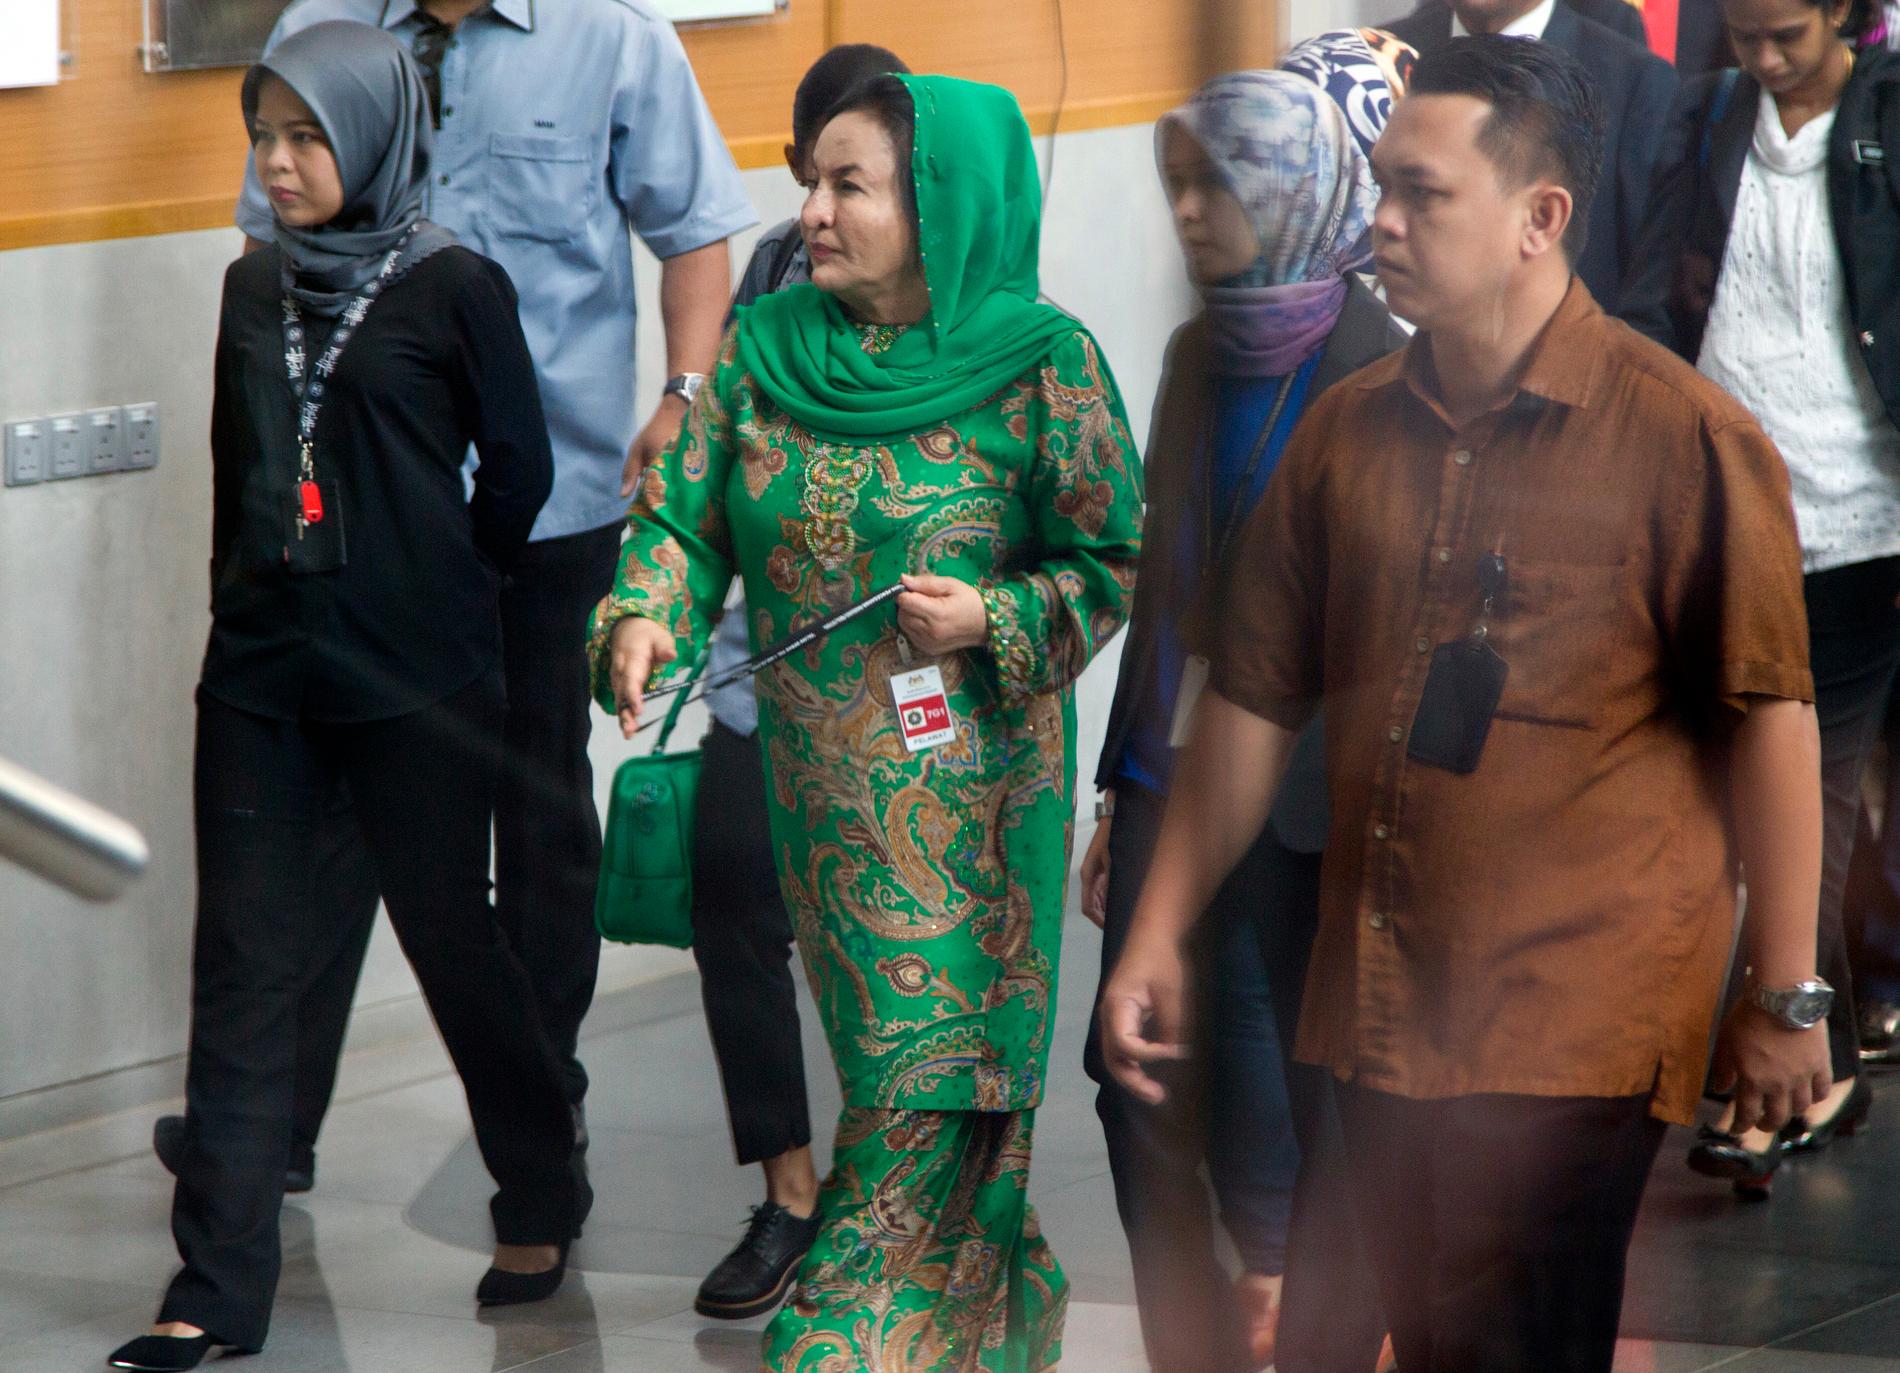 Rosmah Mansor anländer till onsdagens förhör i Putrajaya, administrativ huvudstad i Malaysia. Hon förhördes senast i juni av anitkorruptionskommissionen inom ramen för 1MDB-skandalen.